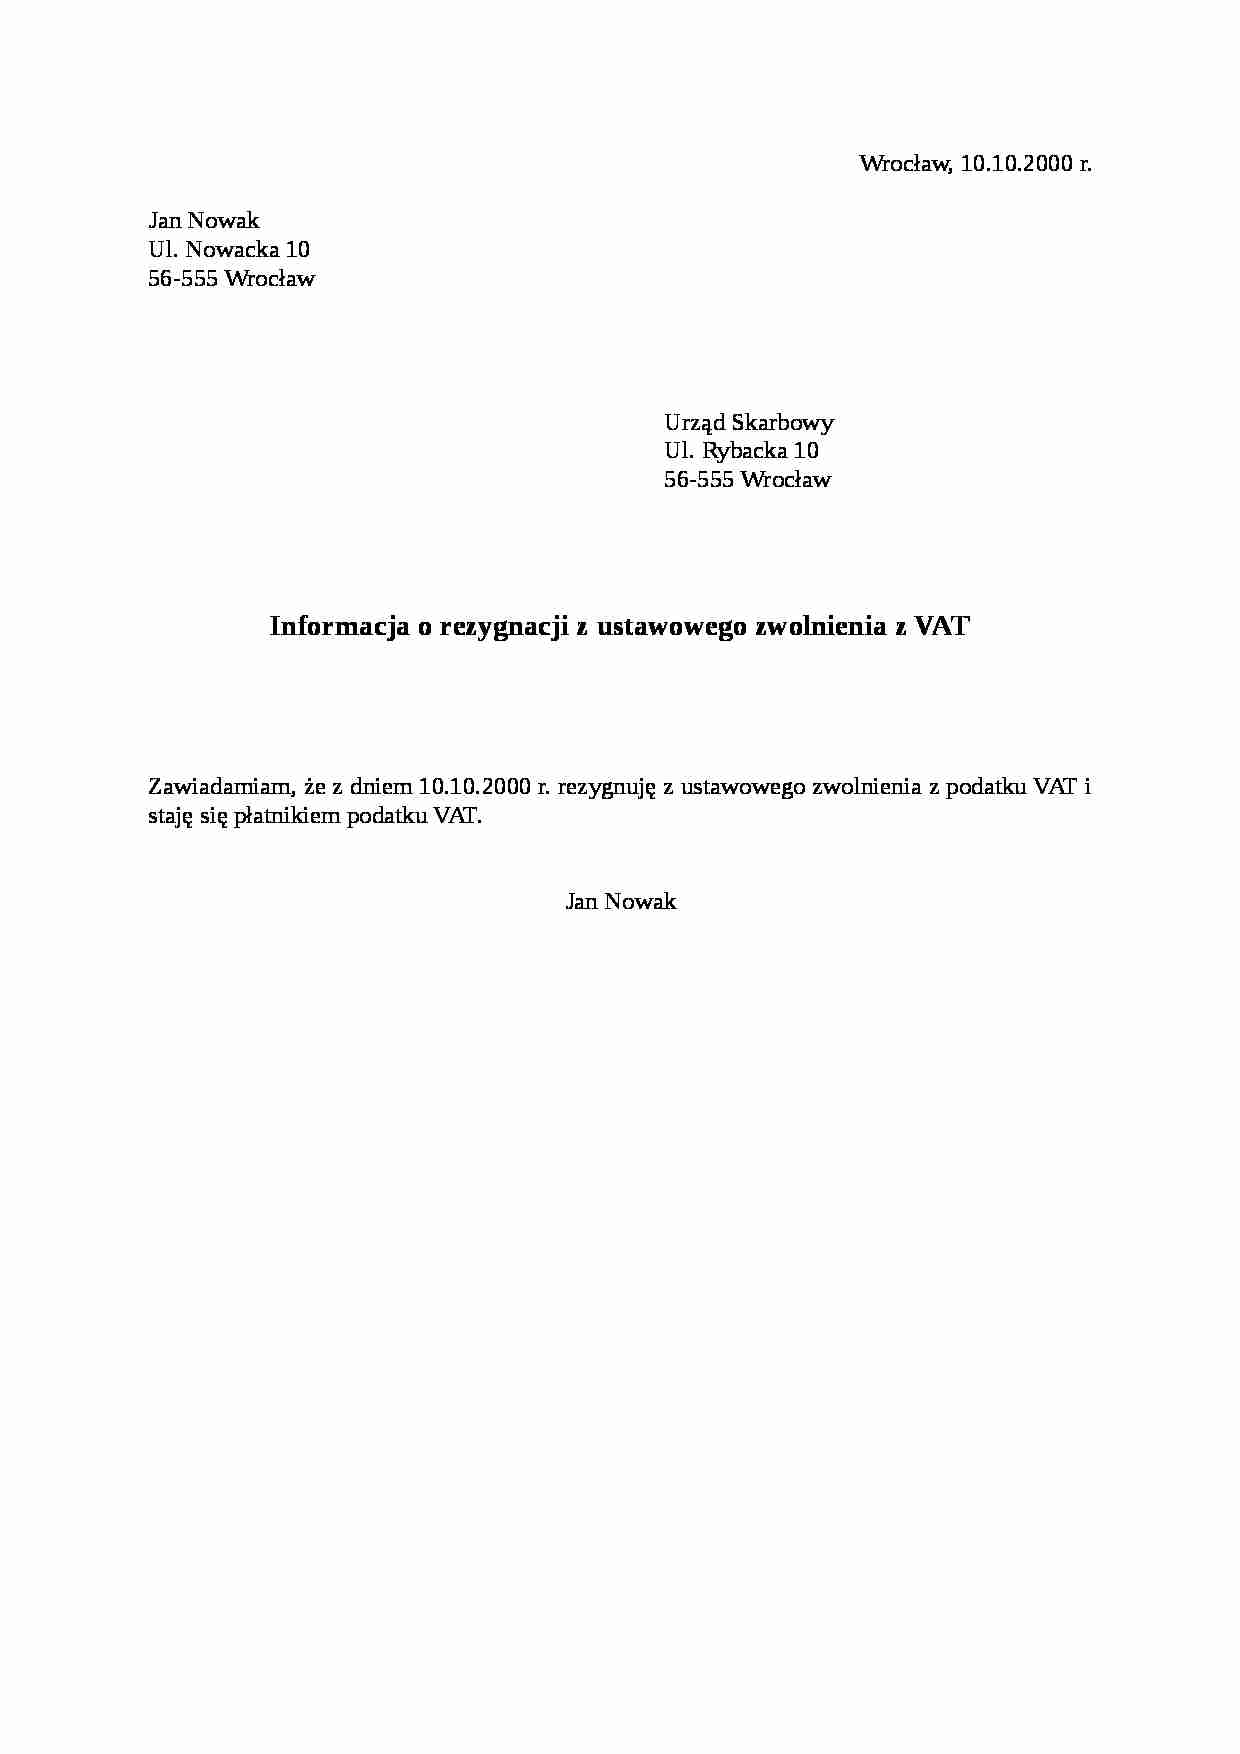 Rezygnacja Z Matury Po 7 Lutym Informacja o rezygnacji z ustawowego zwolnienia z VAT - Notatek.pl